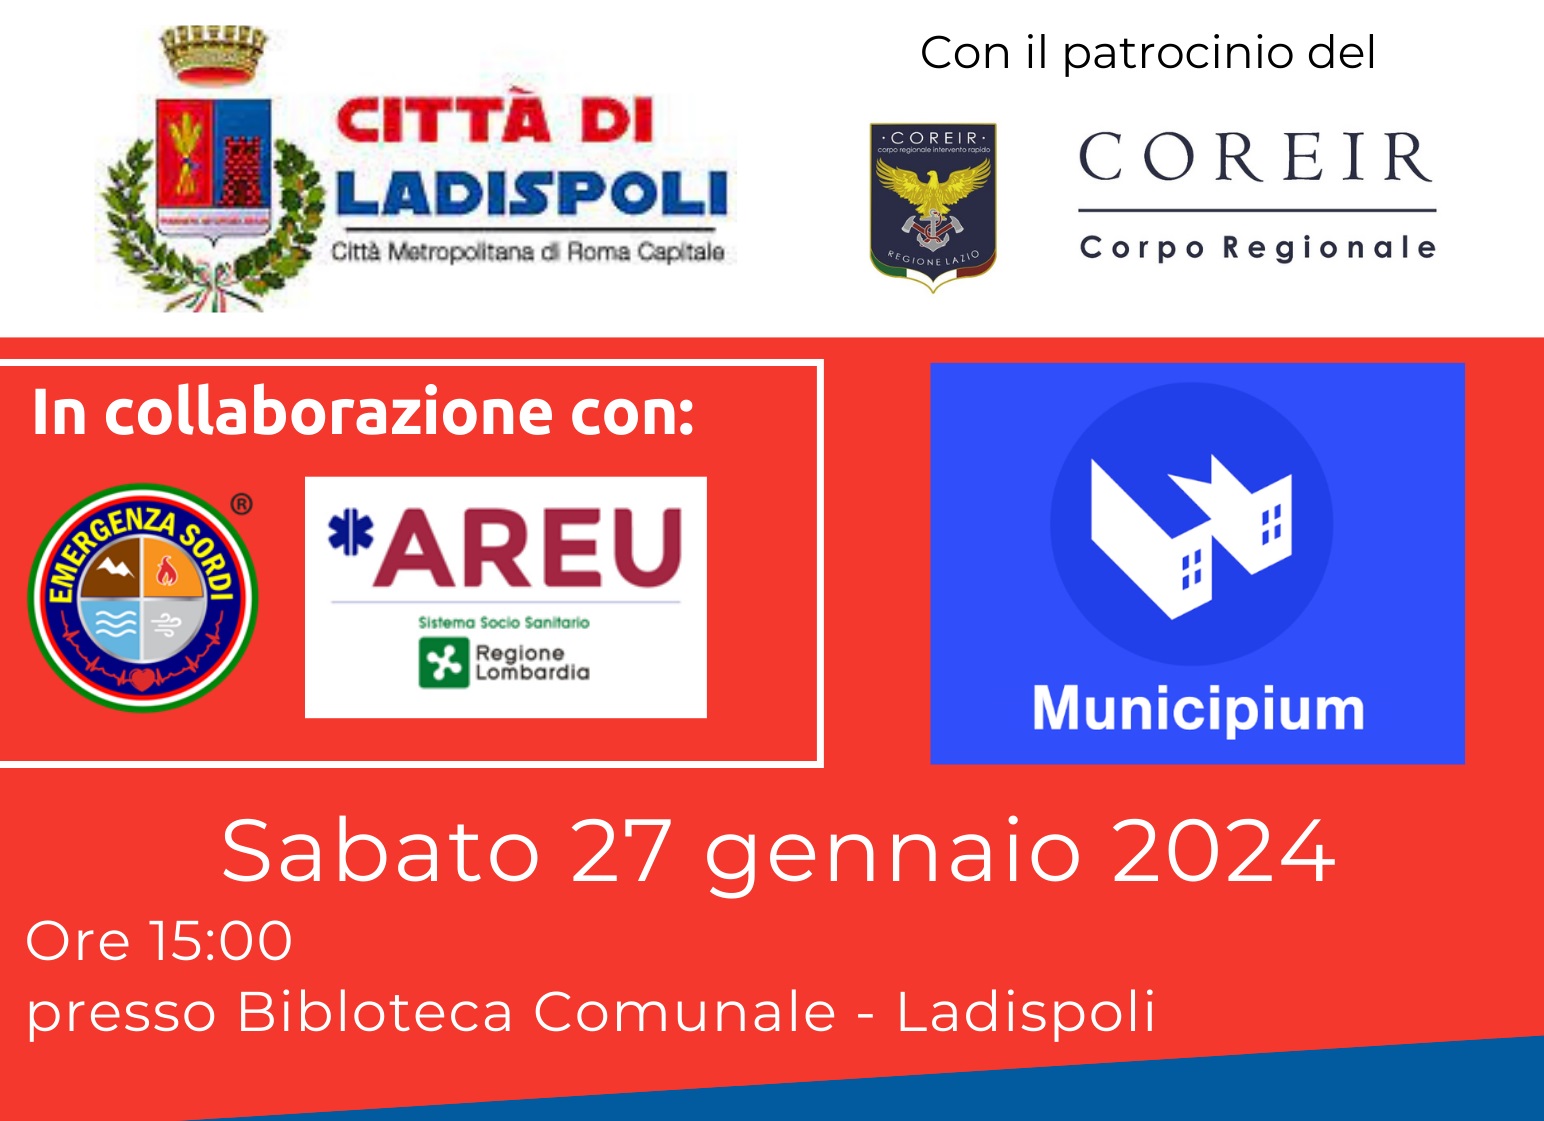 il 27 gennaio a Ladispoli seminario sulle app Where Are U 112 e Municipium Polizia Locale